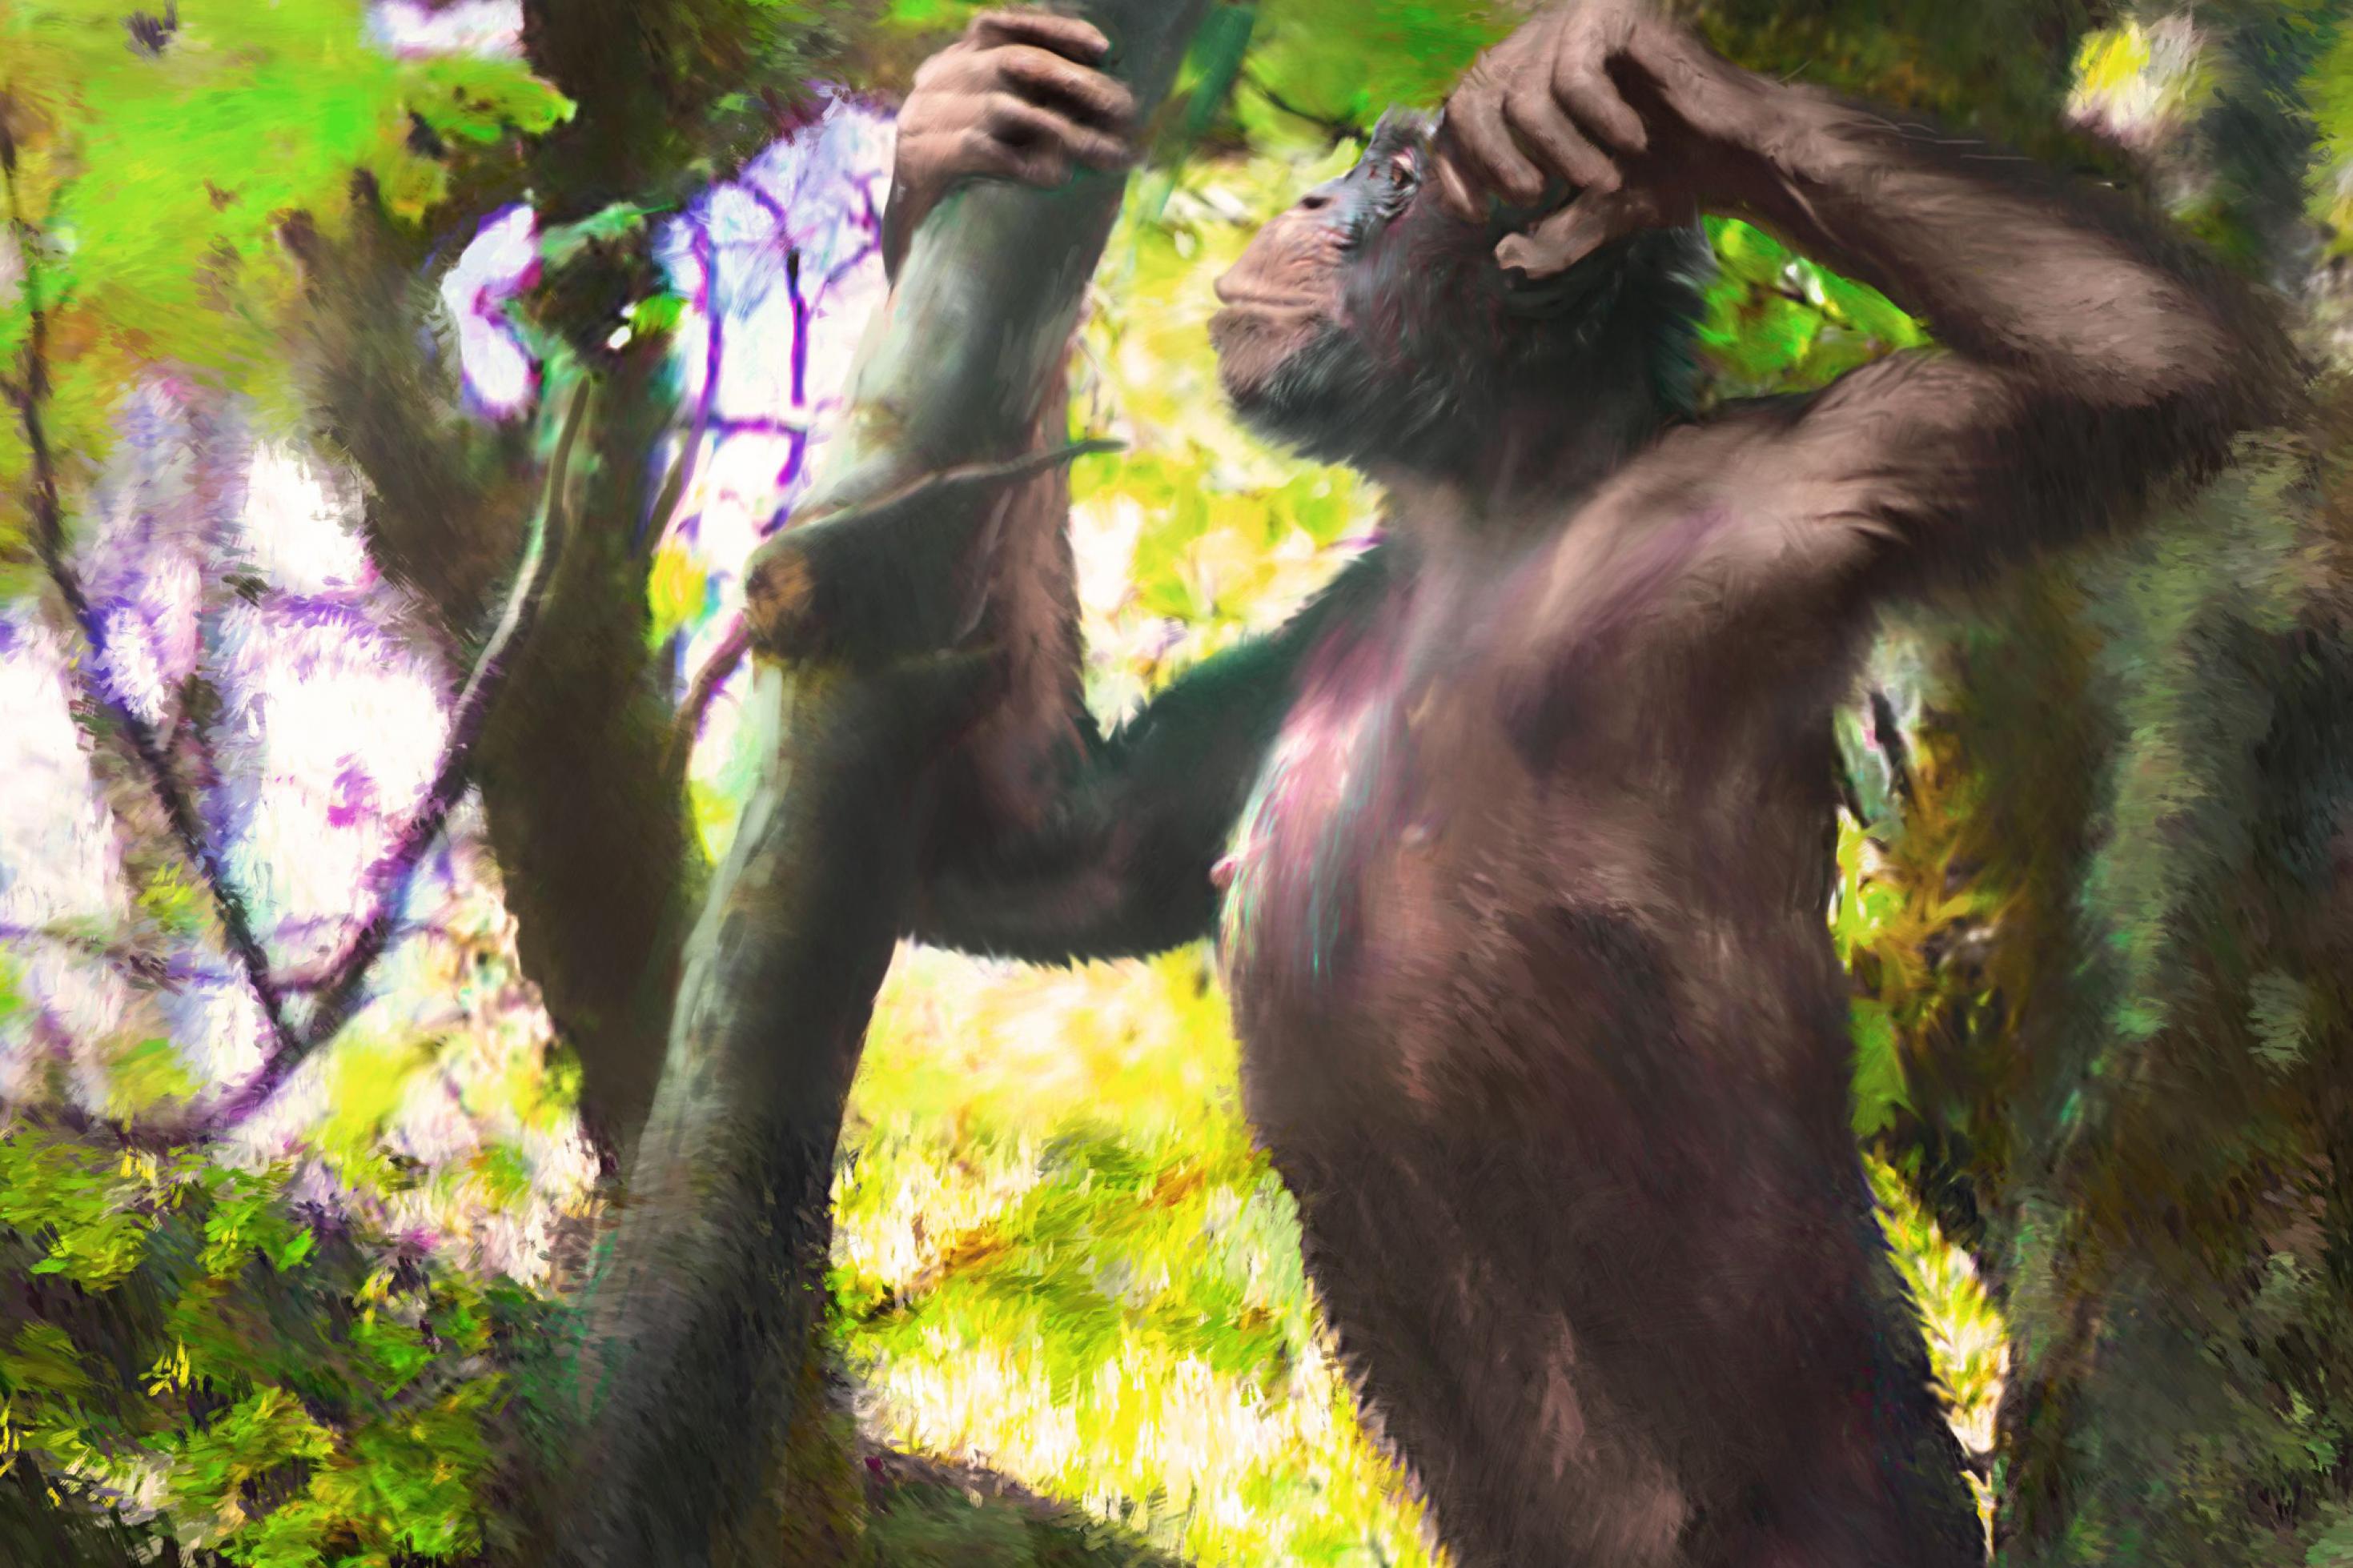 Das Bild zeigt den Menschenaffen „Udo“ als künstlerische Darstellung. Udo lebte vor zwölf Millionen Jahren in Europa und konnte sich aufrecht auf zwei Beinen fortbewegen. Sein lateinischer Name lautet Danuvius guggenmosi.